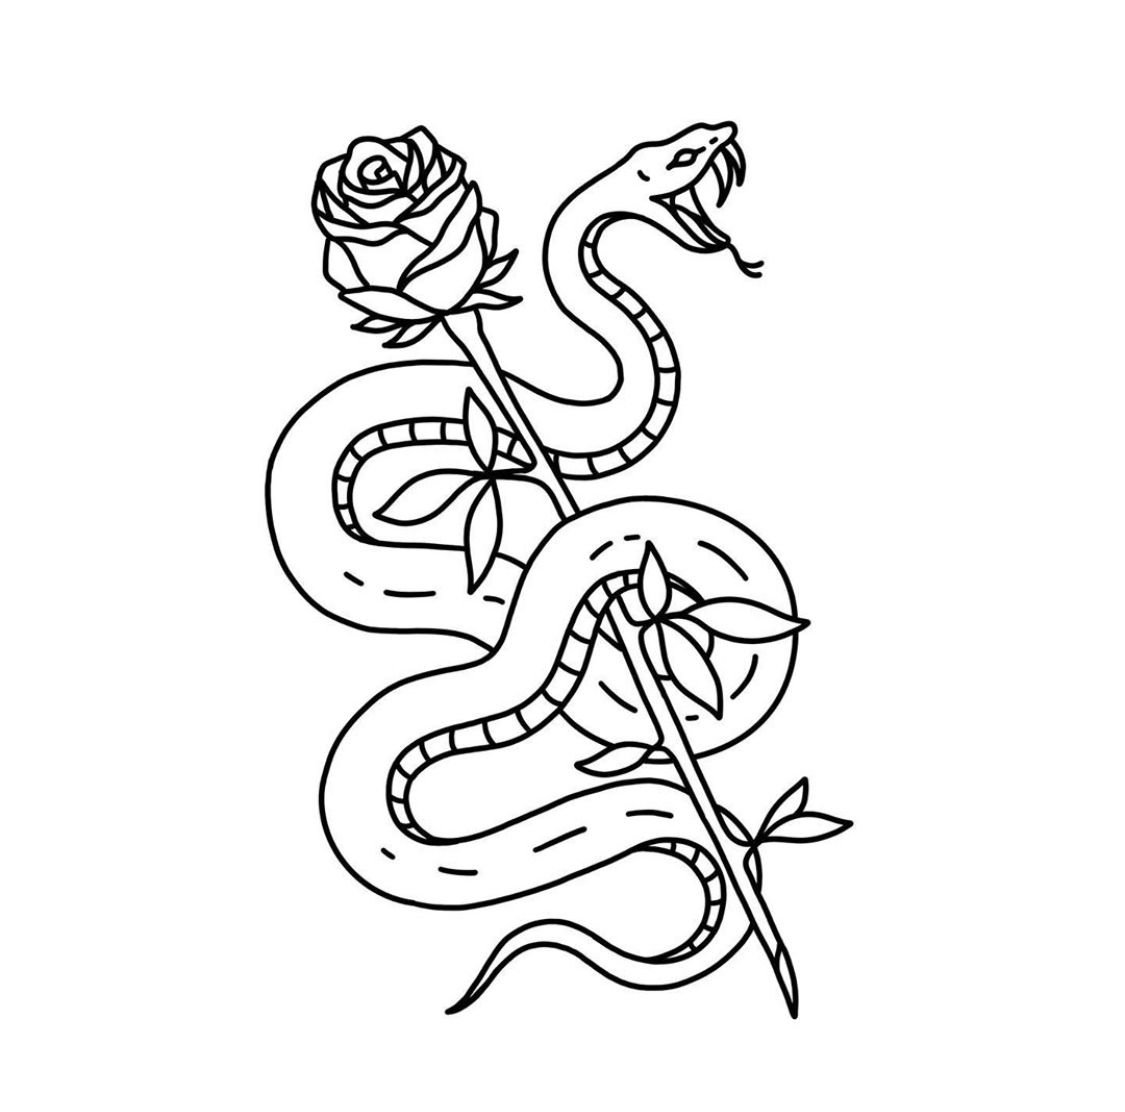 Рисунок змеи для тату